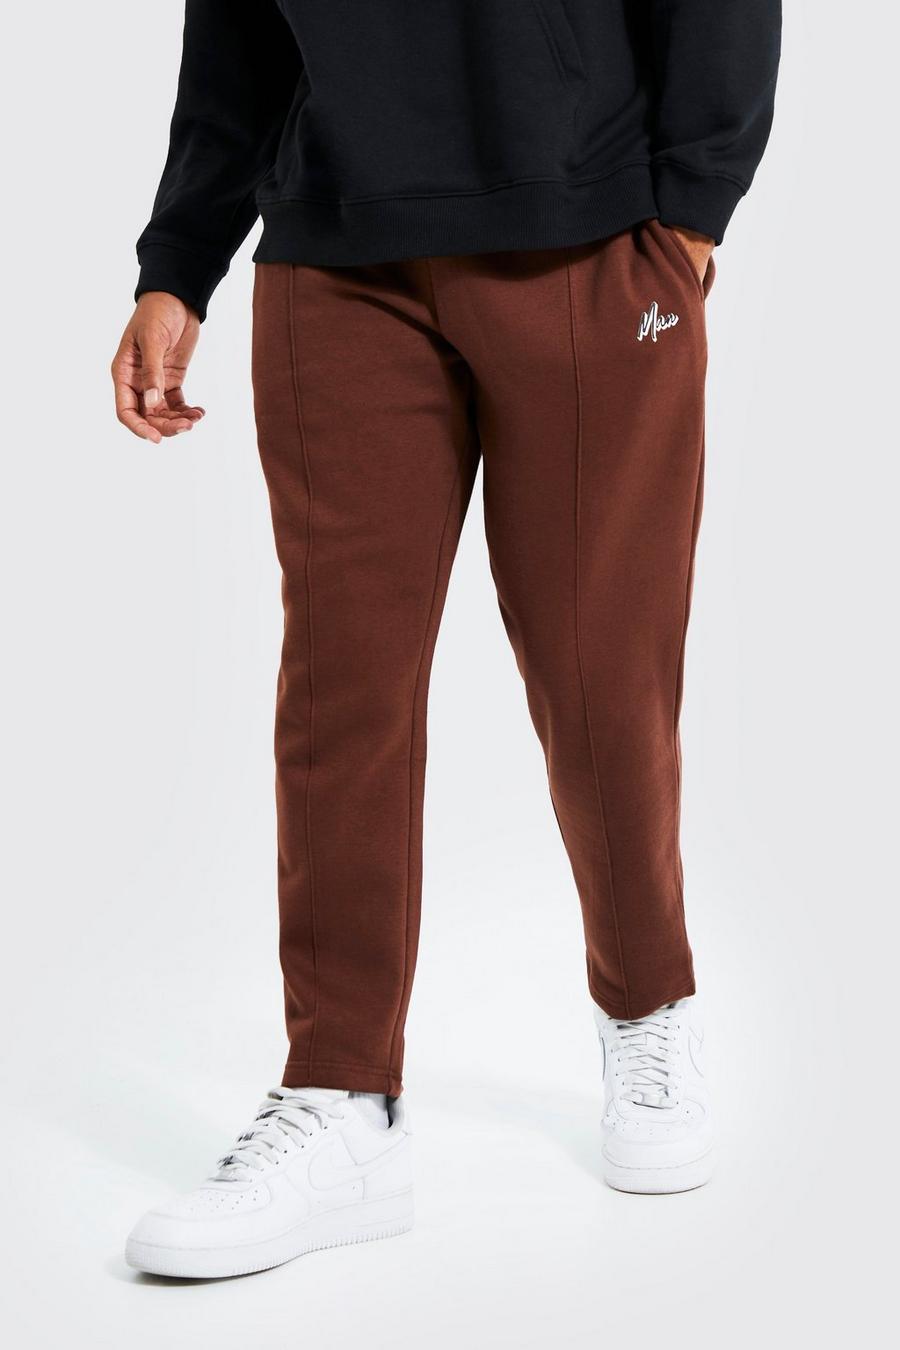 Pantalón deportivo MAN ajustado con alforza, Chocolate marrone